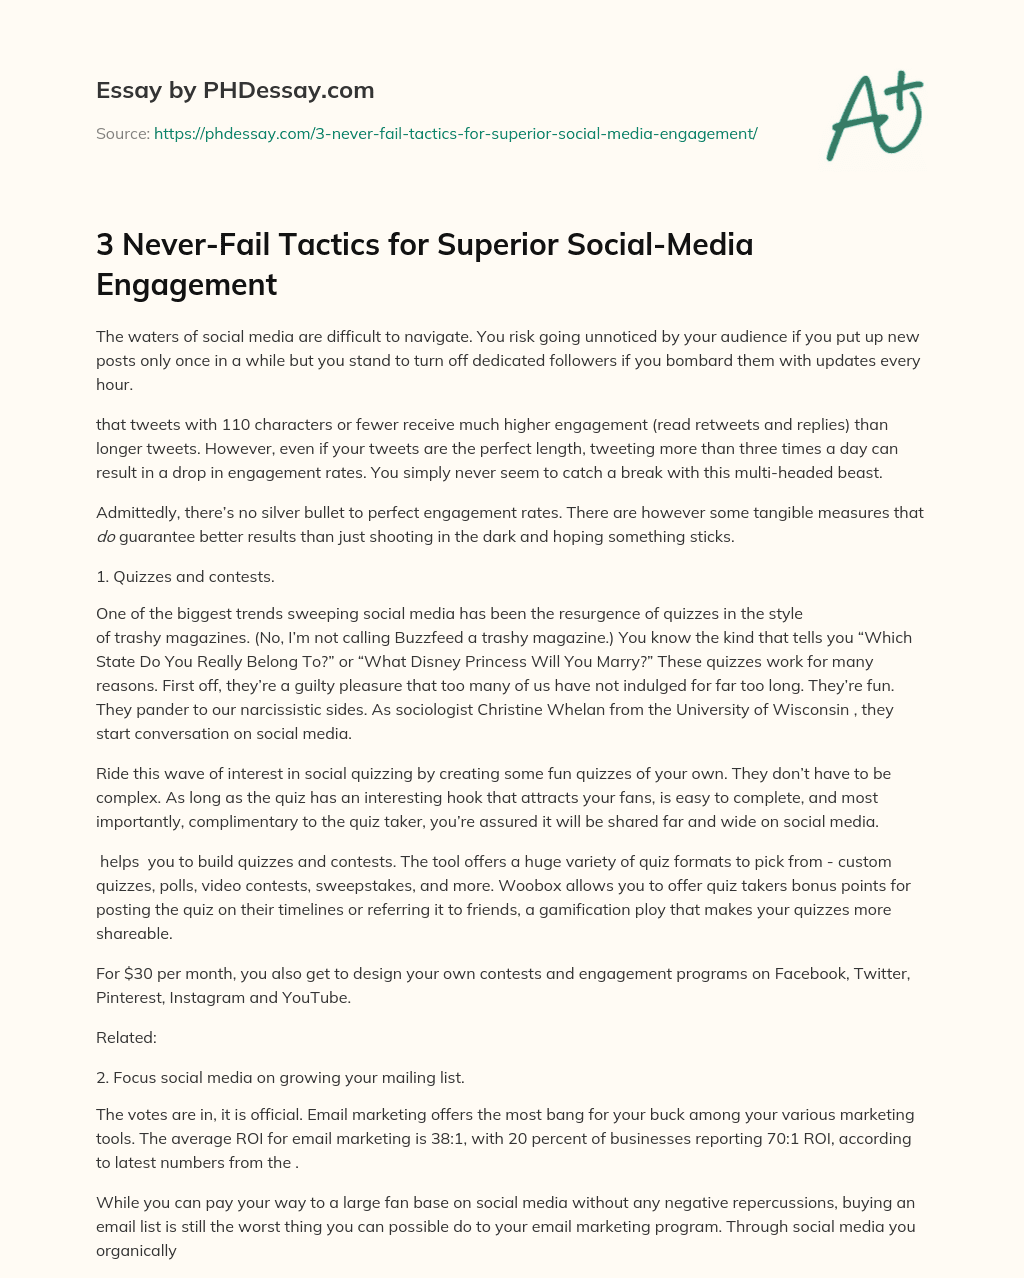 3 Never-Fail Tactics for Superior Social-Media Engagement essay